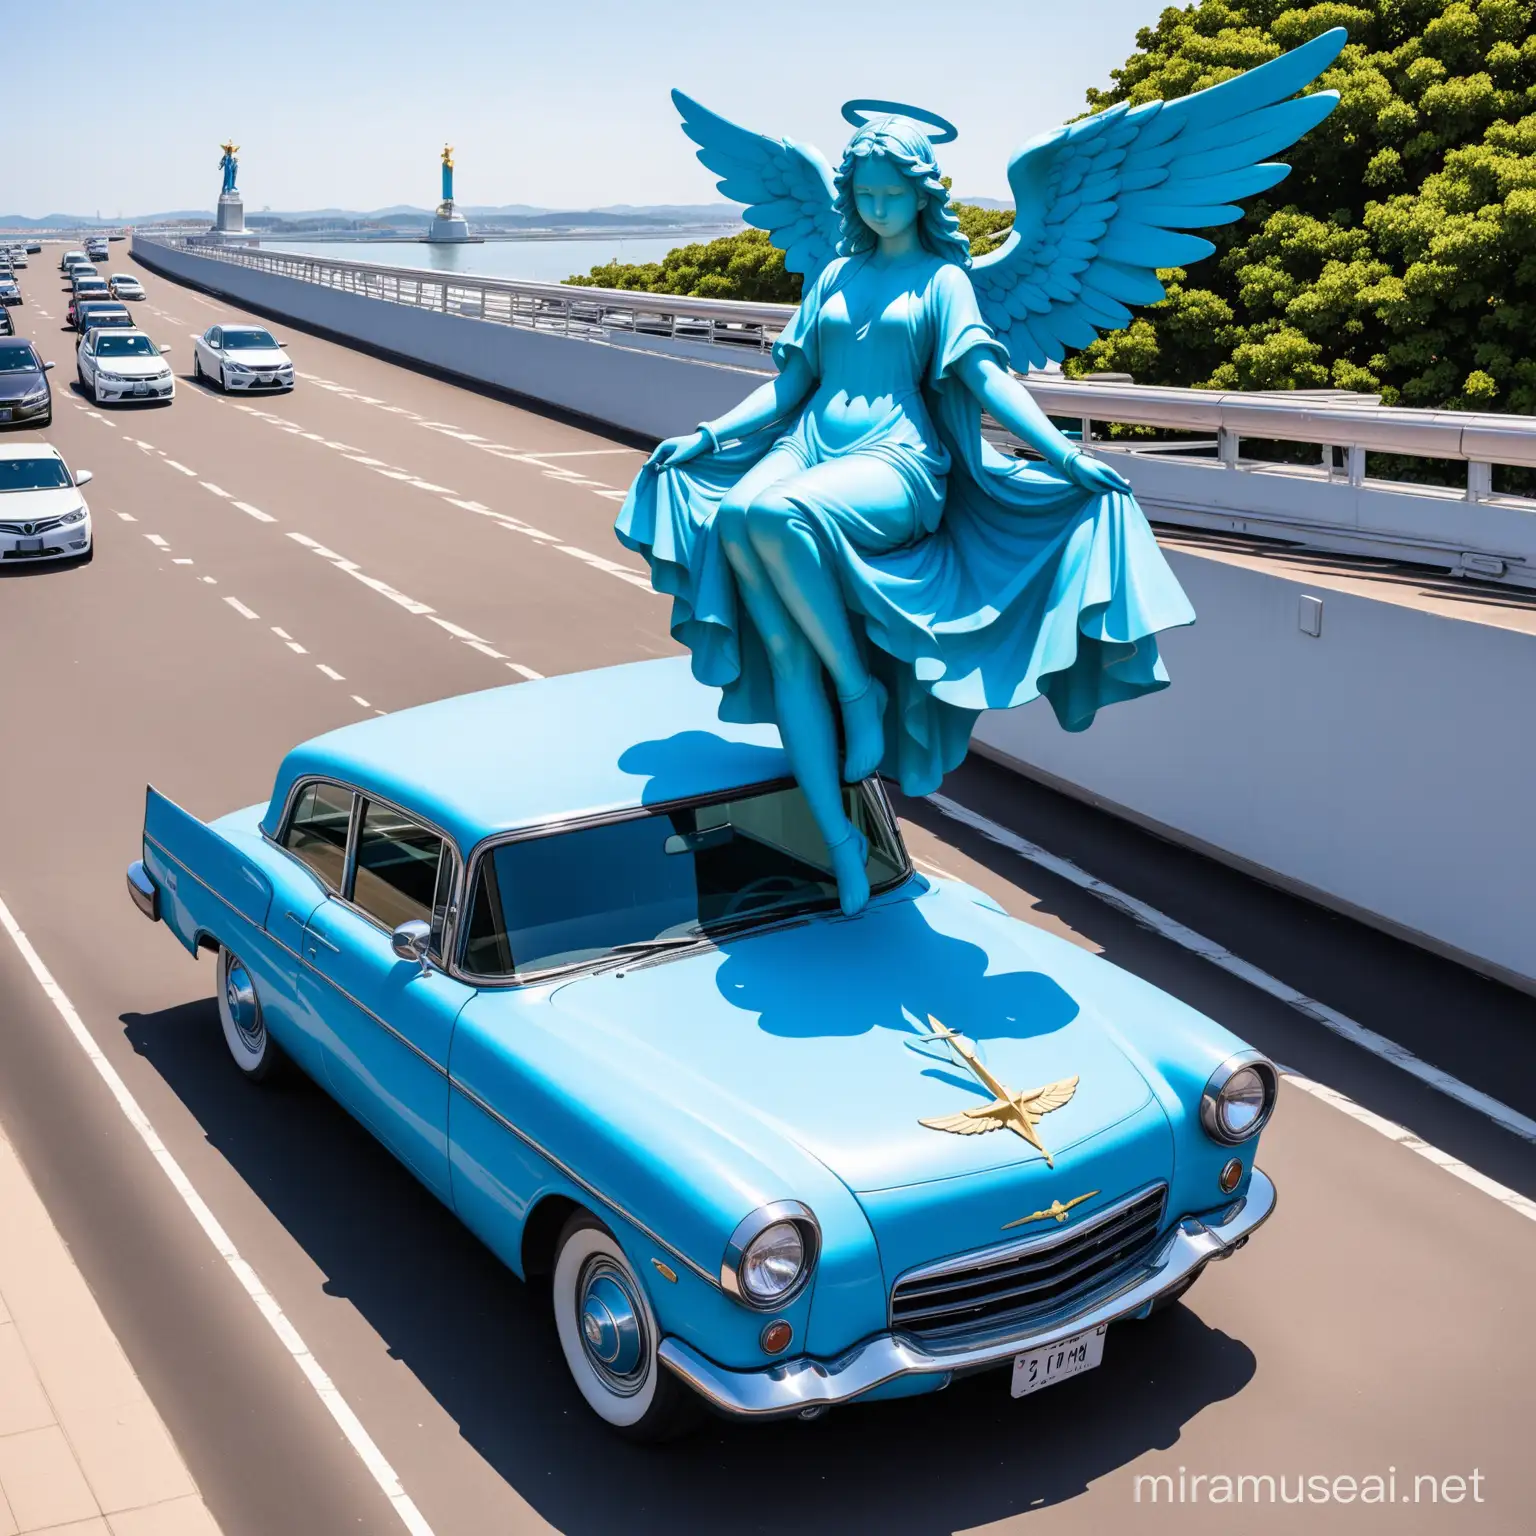 blue angel statue ontop of a car
